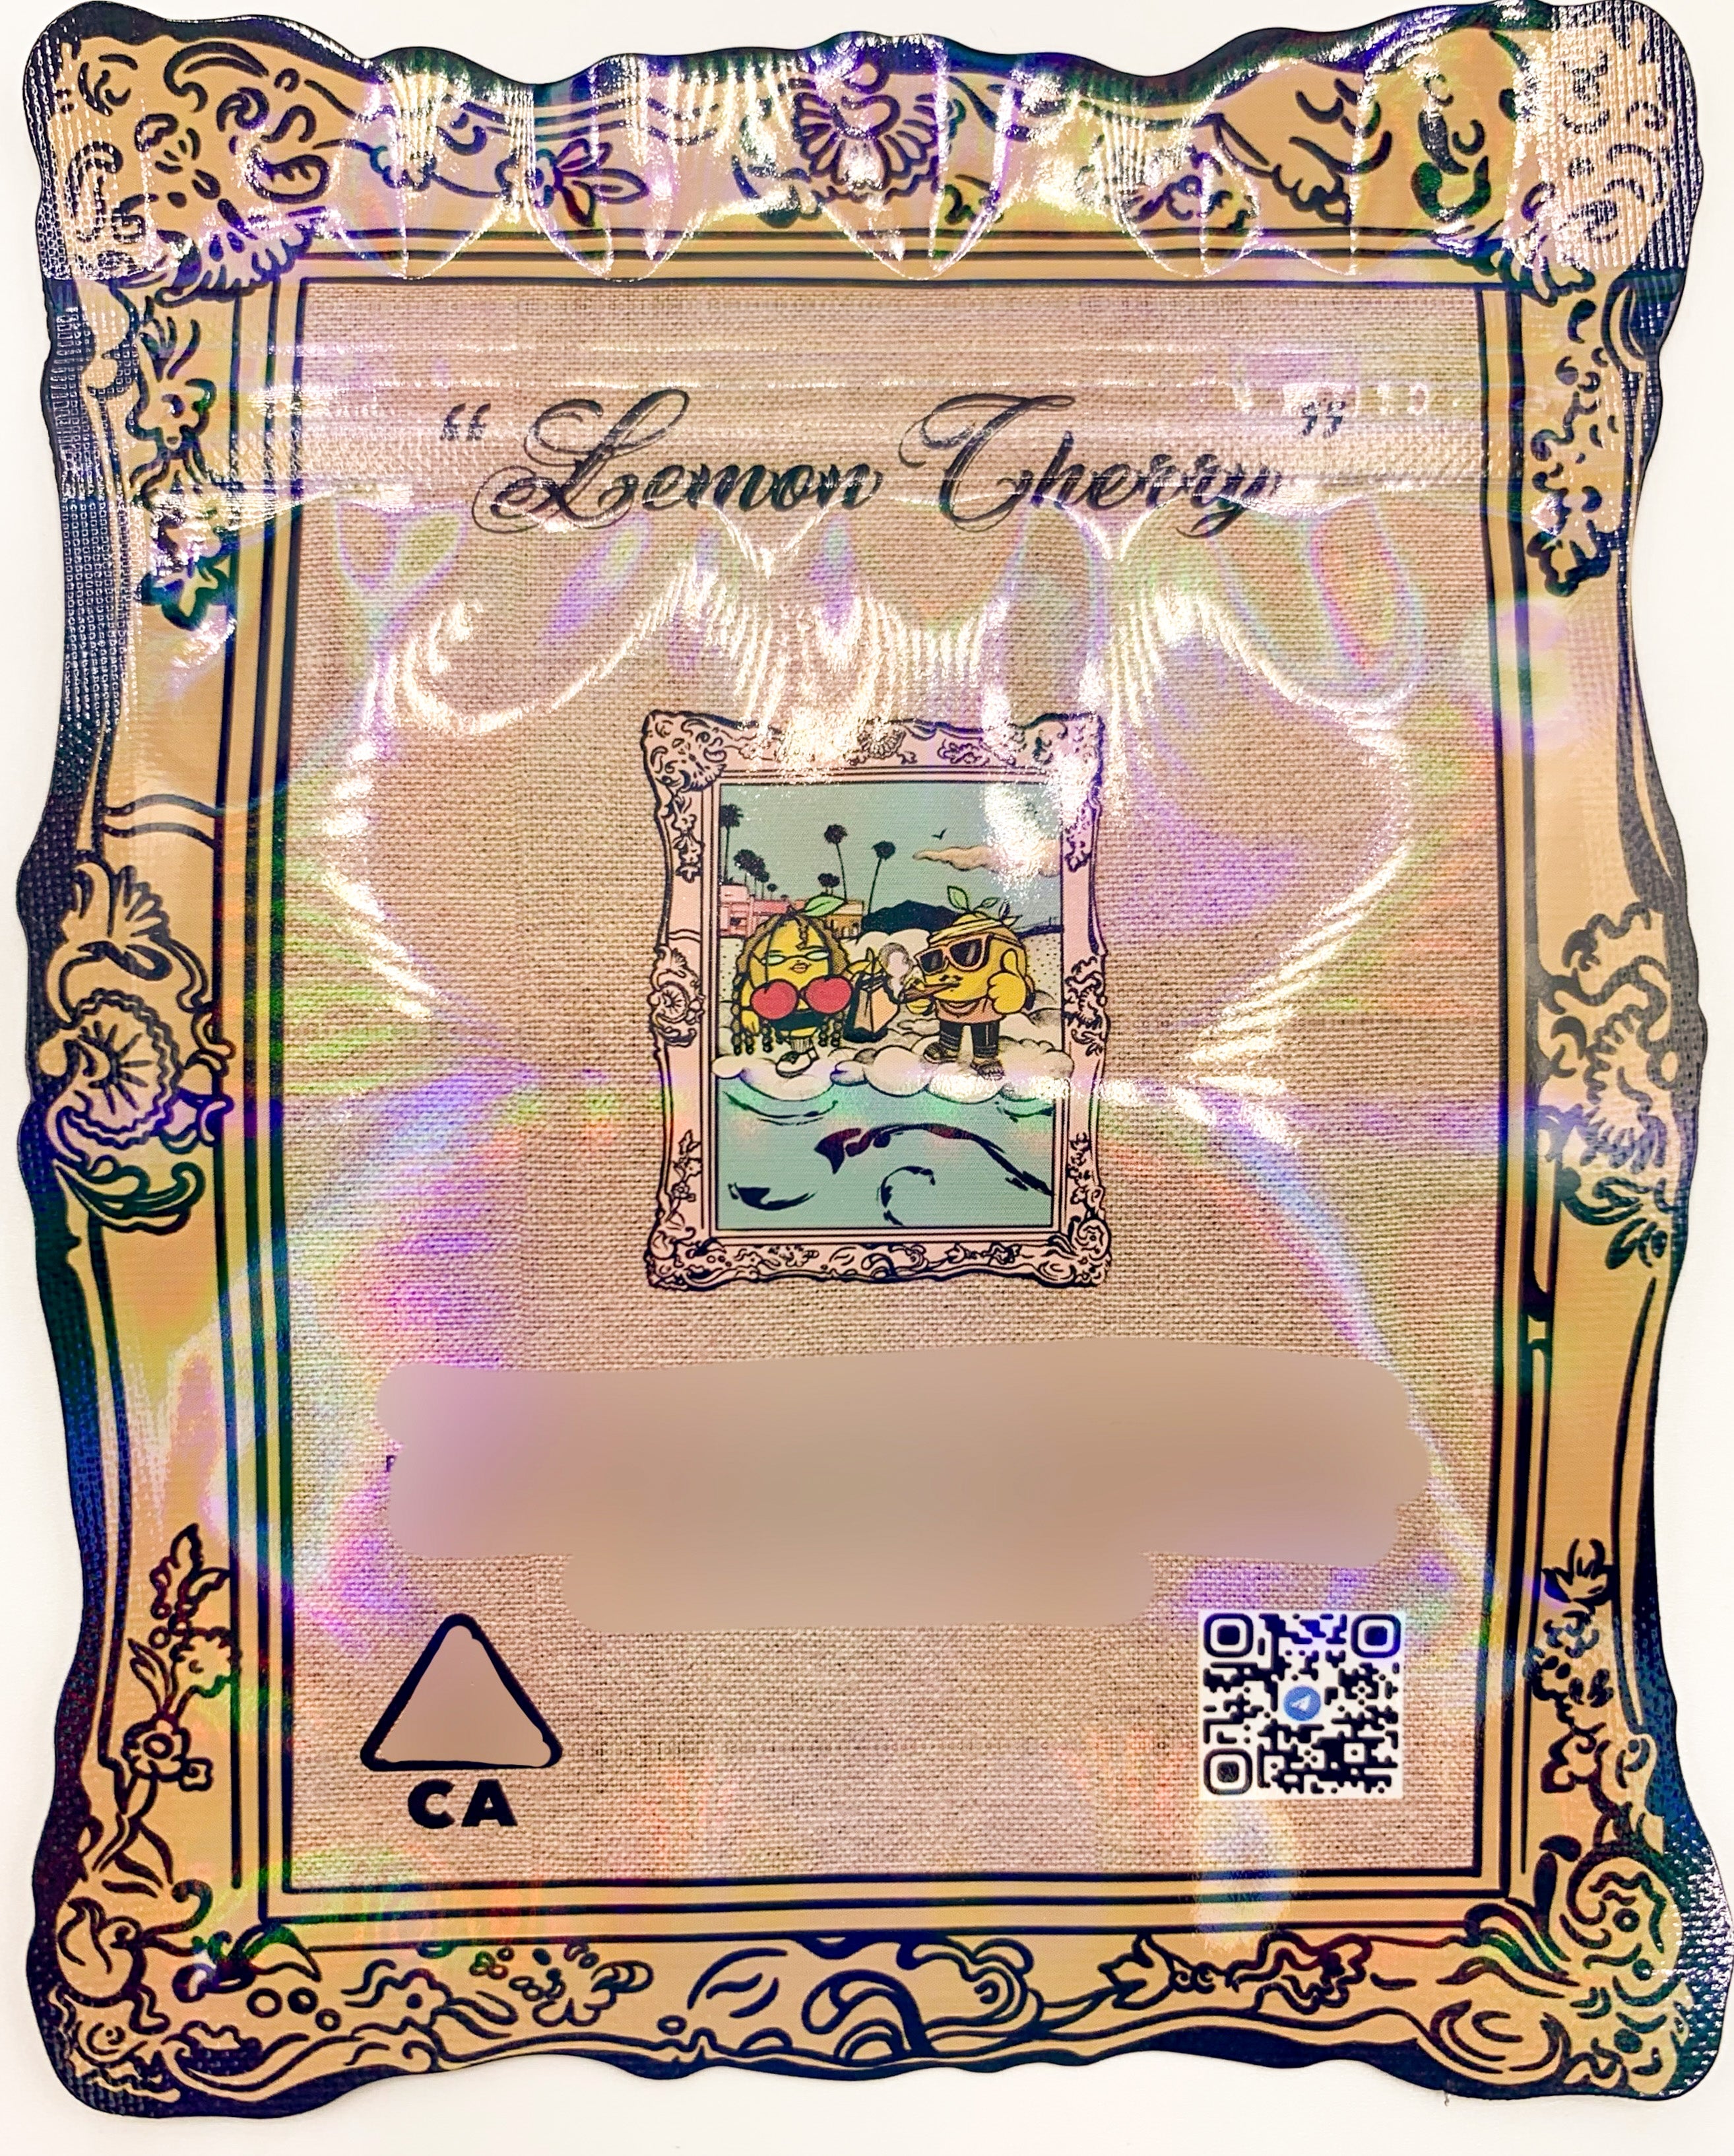 3D ZA Gallery Lemon Cherry 3.5g Mylar Bags